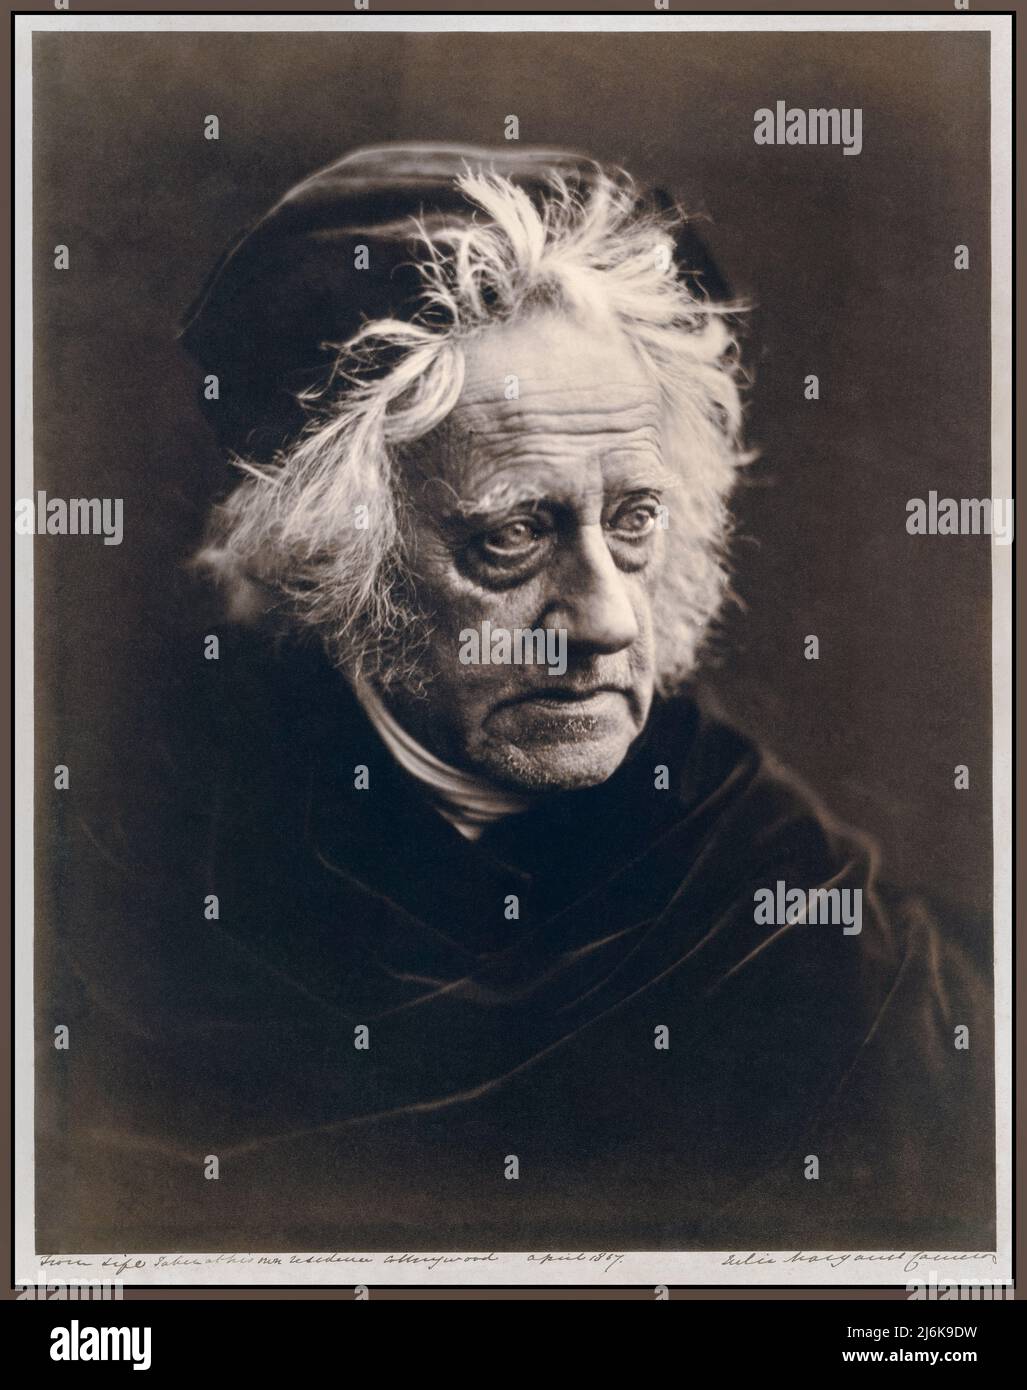 John Herschel (1815-1879), photographié par la célèbre photographe Julia Margaret Cameron en avril 1867. John Herschel était un mathématicien, astronome, chimiste, inventeur et photographe expérimental anglais. Il a nommé sept lunes de Saturne et quatre lunes d'Uranus, inventé le cyanotype et l'actinomètre, et a beaucoup écrit sur des sujets tels que la météorologie, la géographie physique et le télescope. Banque D'Images